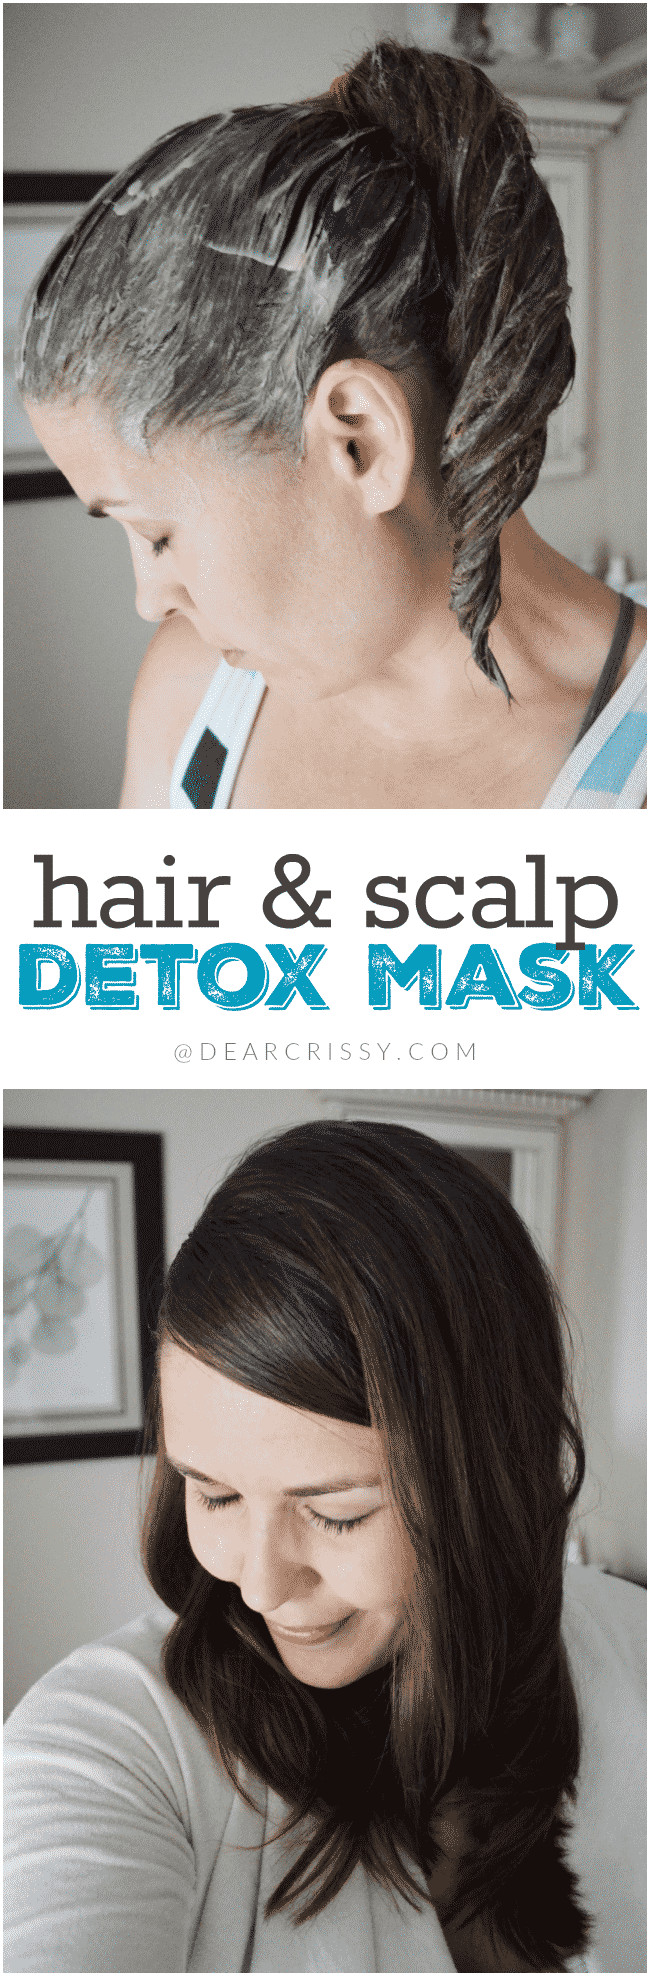 DIY Hair Detox
 Hair & Scalp Detox Mask Easy DIY Hair Mask Recipe